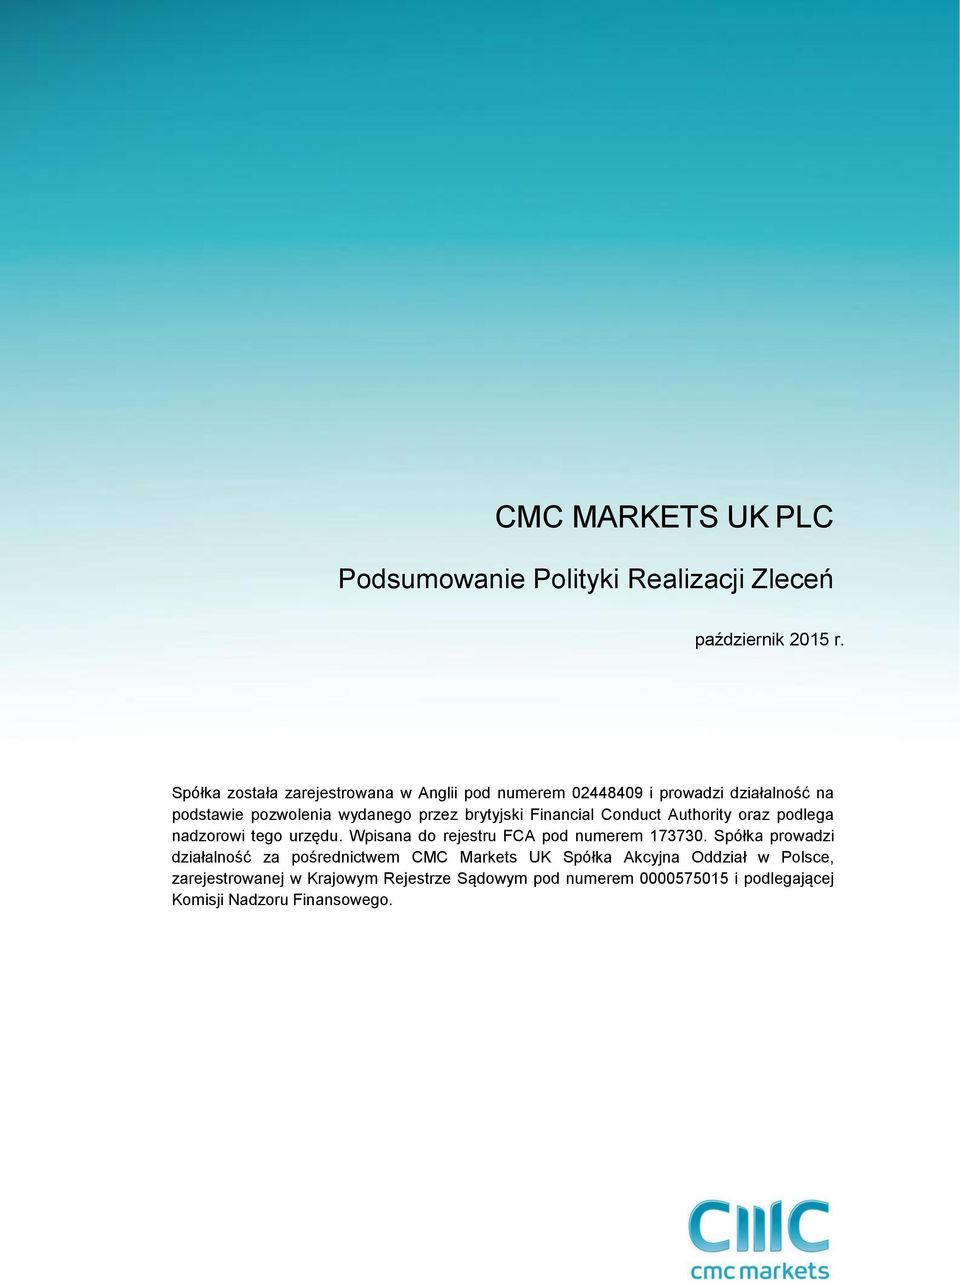 Wpisana do rejestru FCA pod numerem 173730 Spółka prowadzi działalność za pośrednictwem CMC Markets UK Spółka Akcyjna Oddział w Polsce,